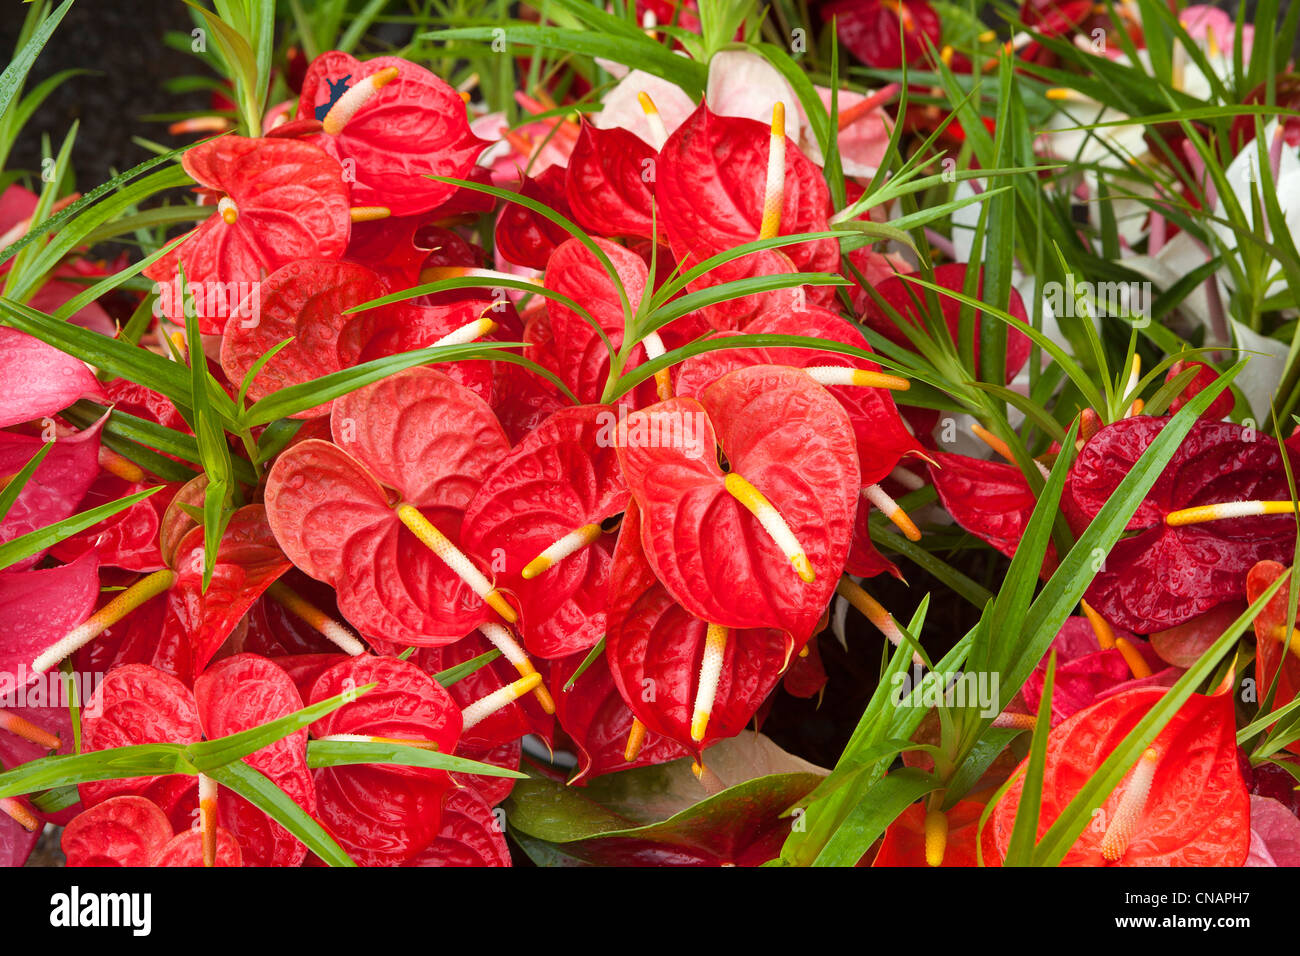 United States, Hawaii, Big island, Hilo, flower market, anthurium Stock Photo